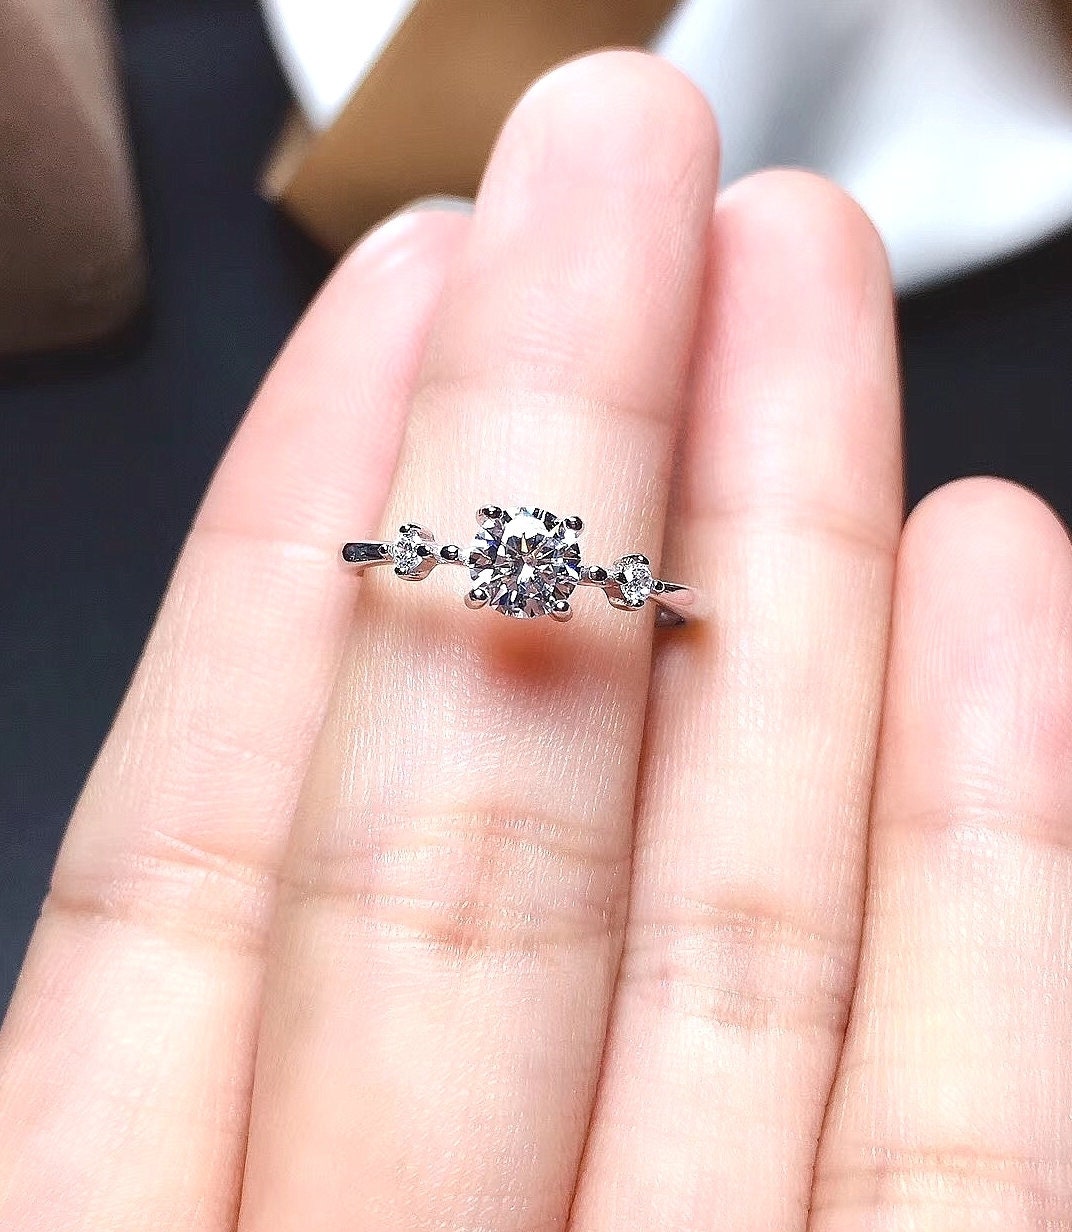 0.5 Carat Top Grade Moissanite Ring, S925 Sterling Silver, Handmade Wedding Engagement Gift For Women Her